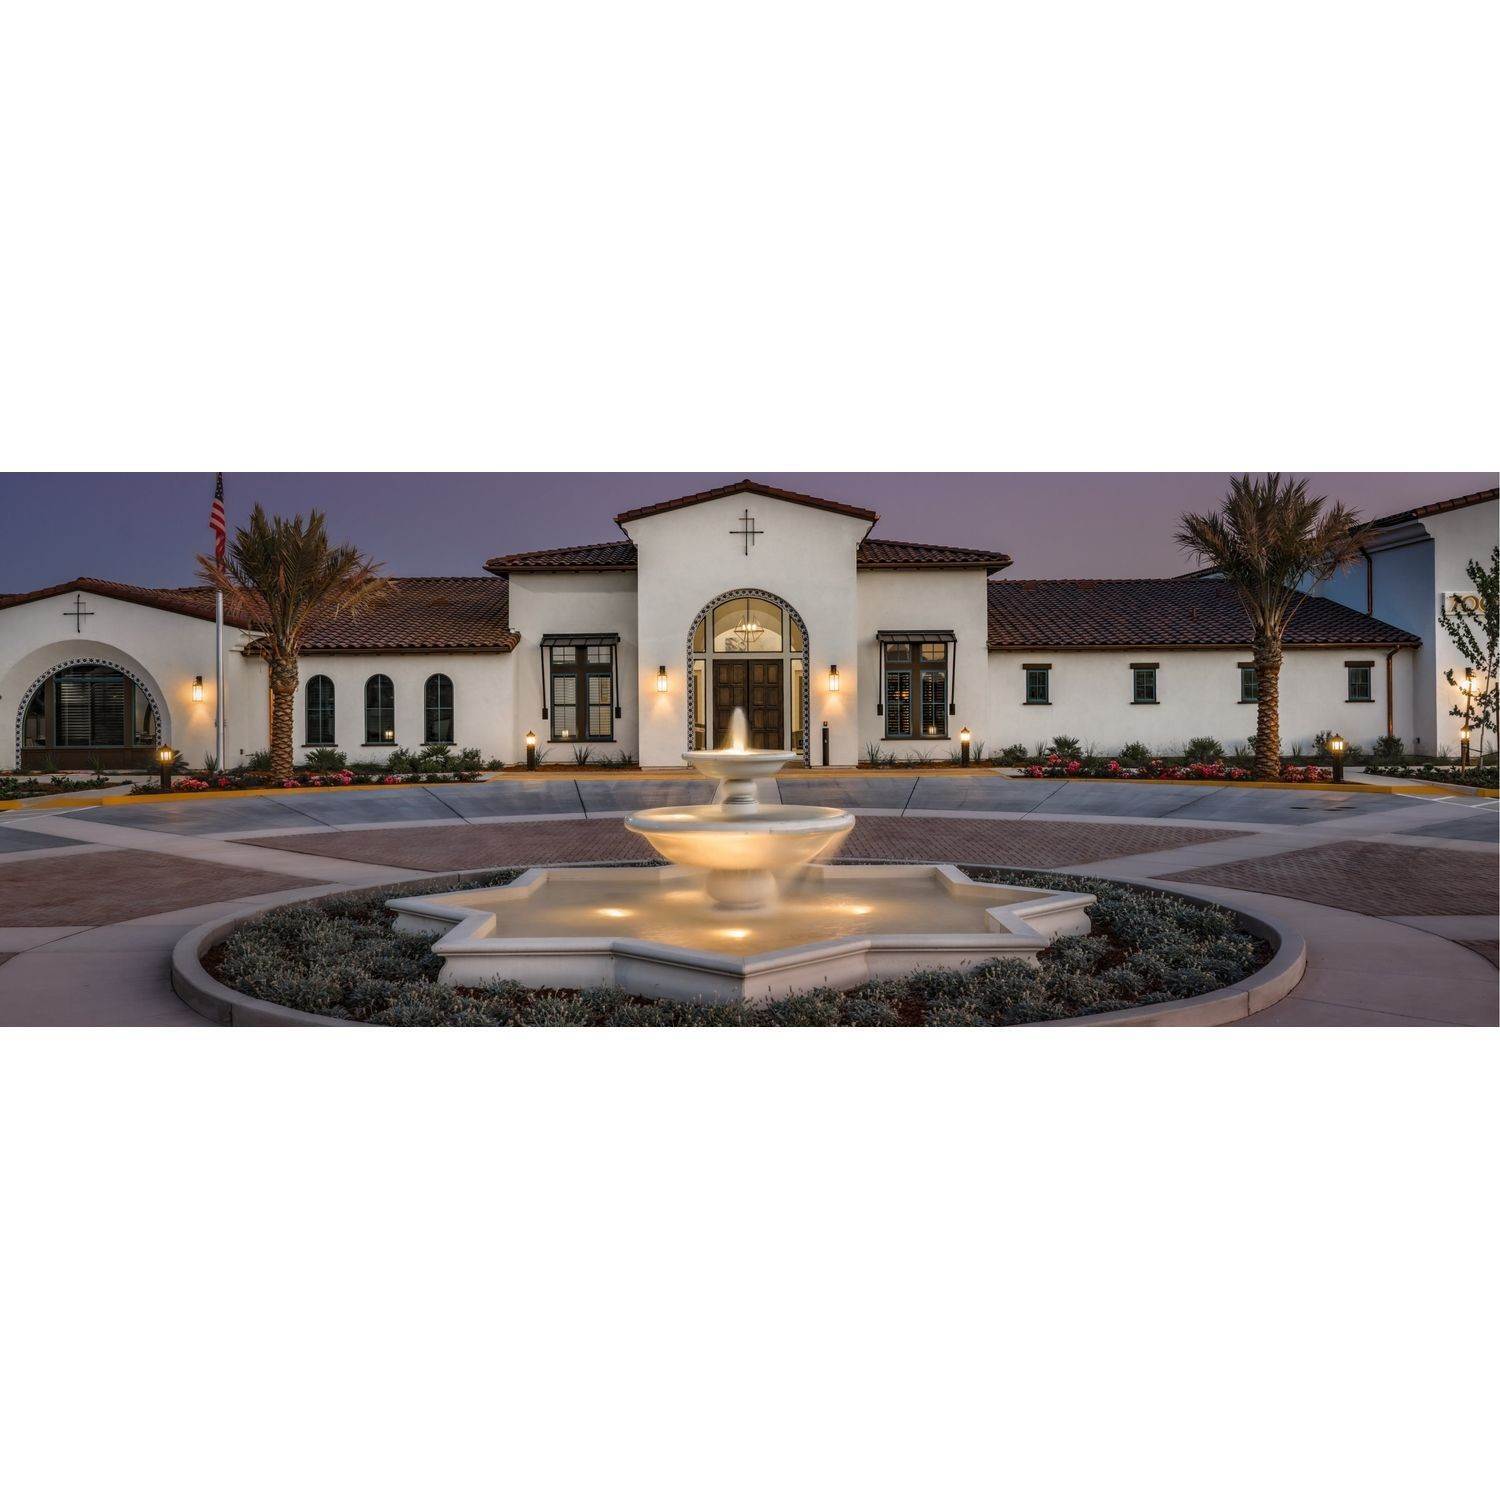 14. Mosaic Active Adult 55+ gebouw op 4975 Del Mar Drive, El Dorado Hills, CA 95762